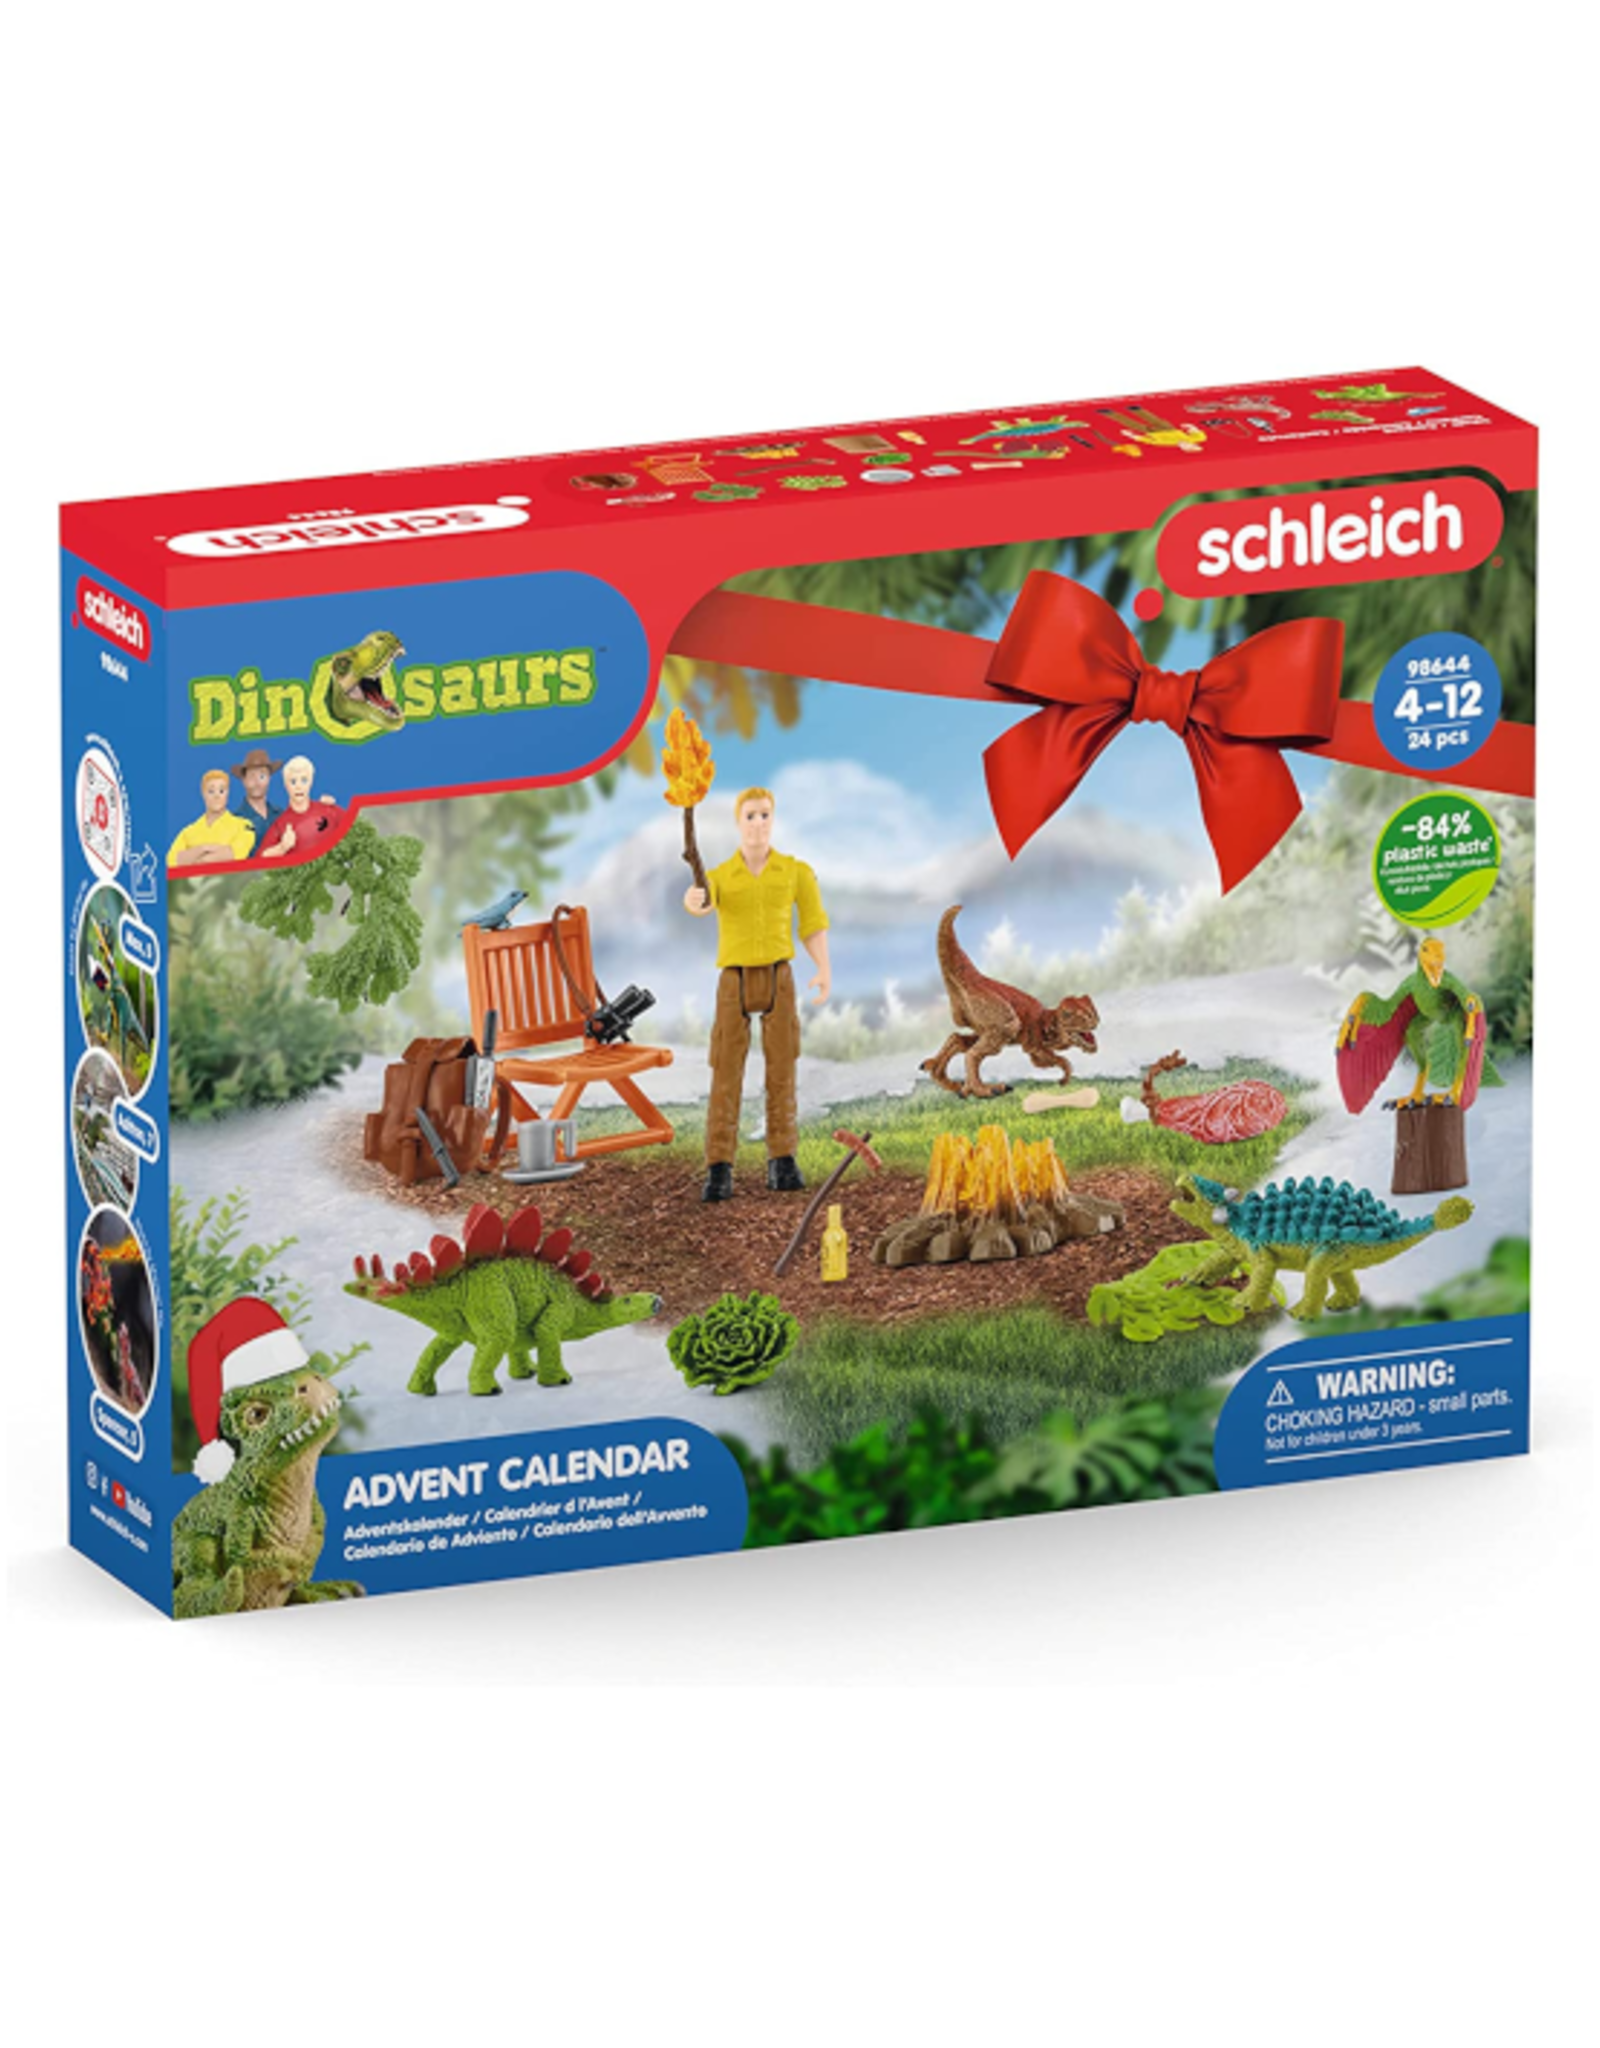 Schleich Schleich - Dinosaurs - 98644 - Advent Calendar 2022